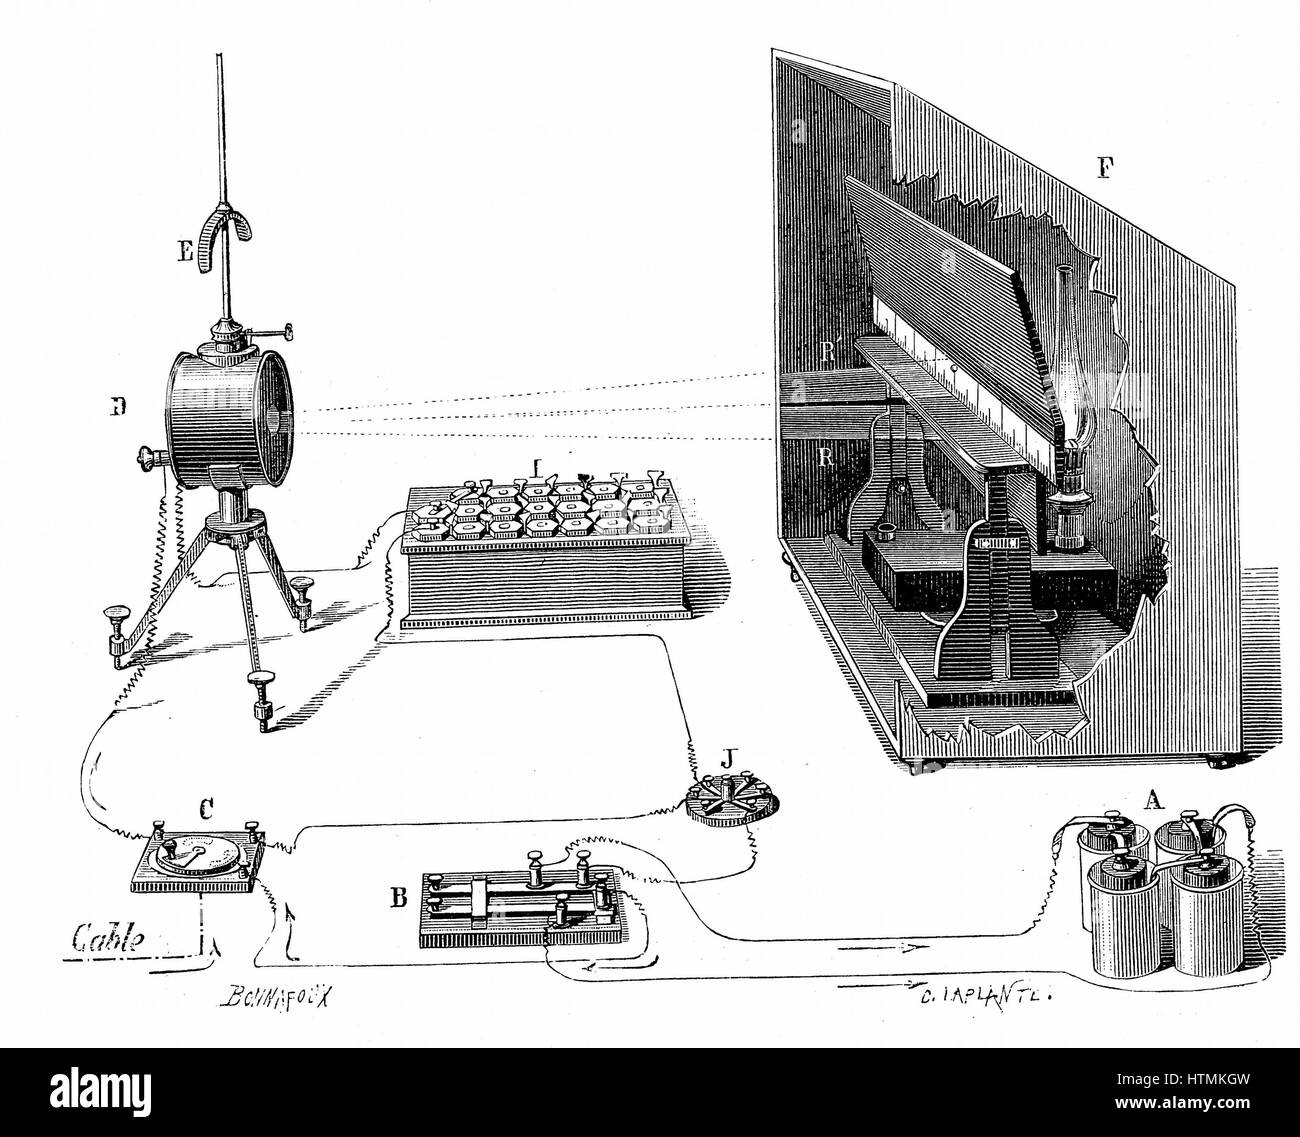 Transatlantischen Telegrafen. William Thomson (Lord Kelvin 1824-1907) empfangende Vorrichtung in Brest, einschließlich seiner Spiegel-Galvanometer (links), ein Instrument zur Messung der kleine elektrische Ströme Holzstich 1877 verwendet Stockfoto